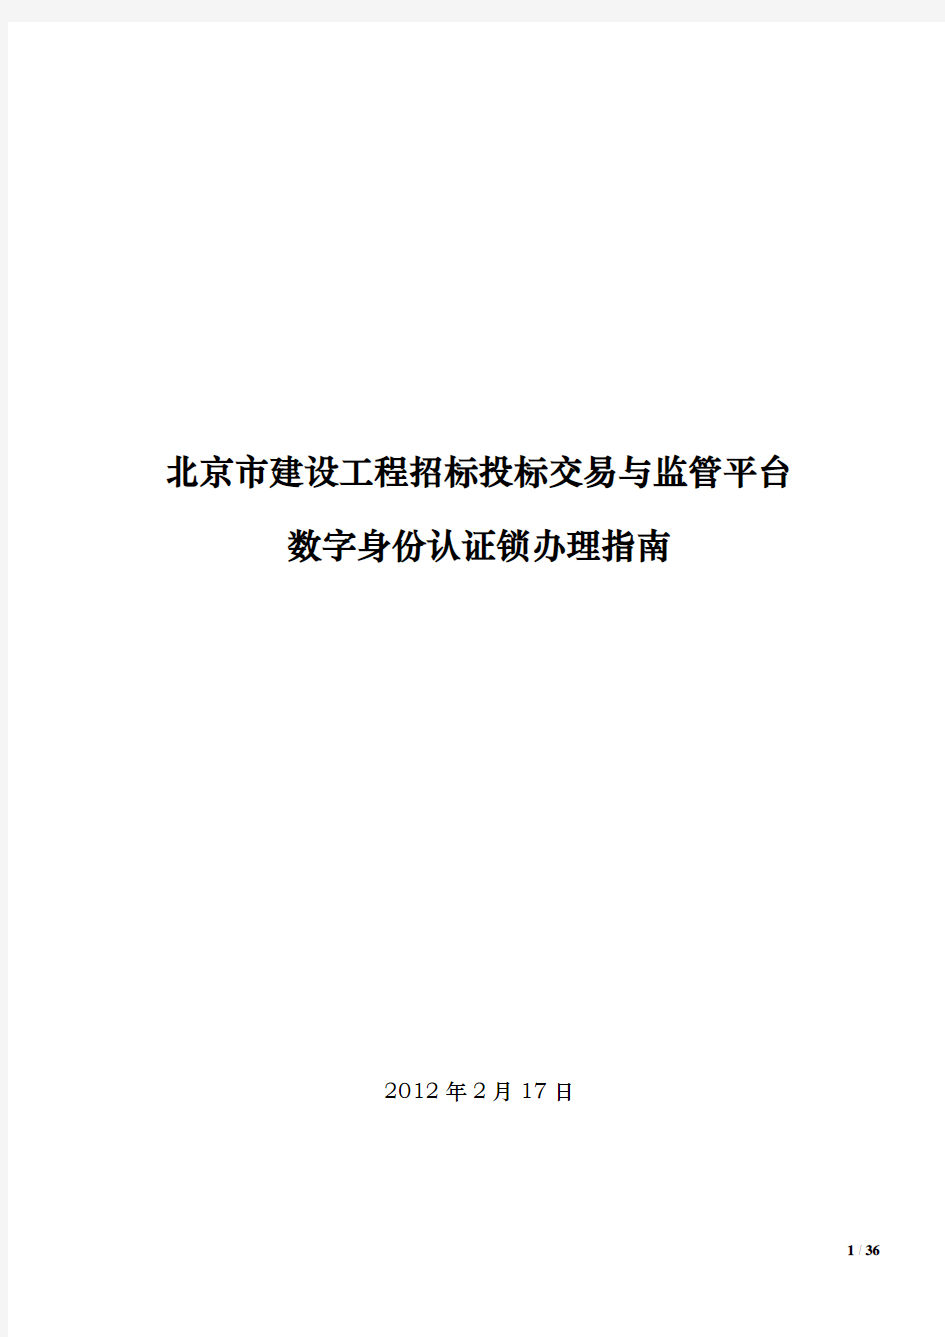 北京市建设工程招标投标交易与监管平台数字身份认证锁办理指南v1.9